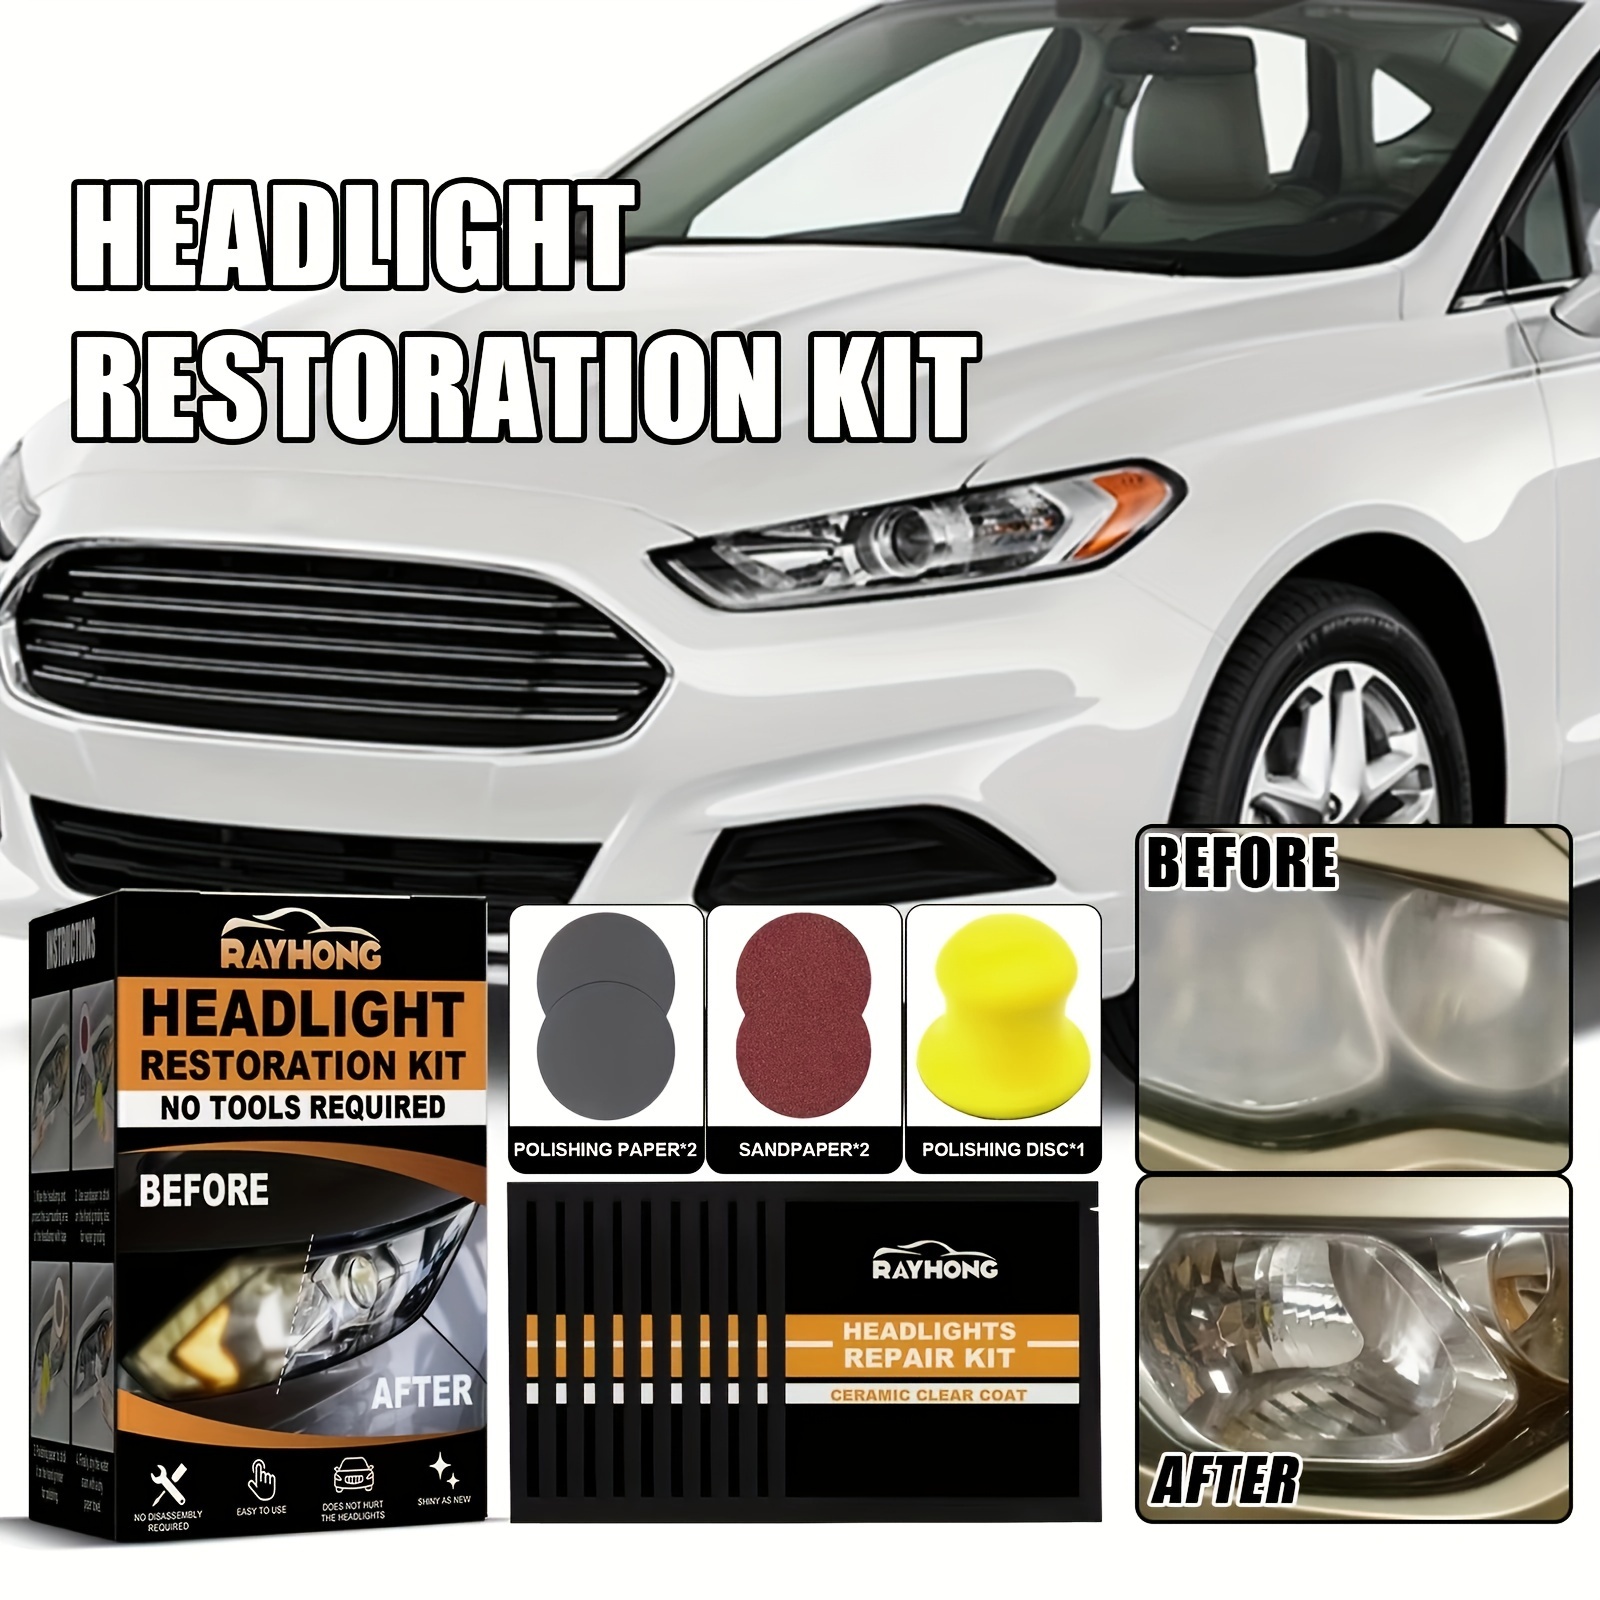 Comprar Kit de restauración de faros de coche, lente de faro